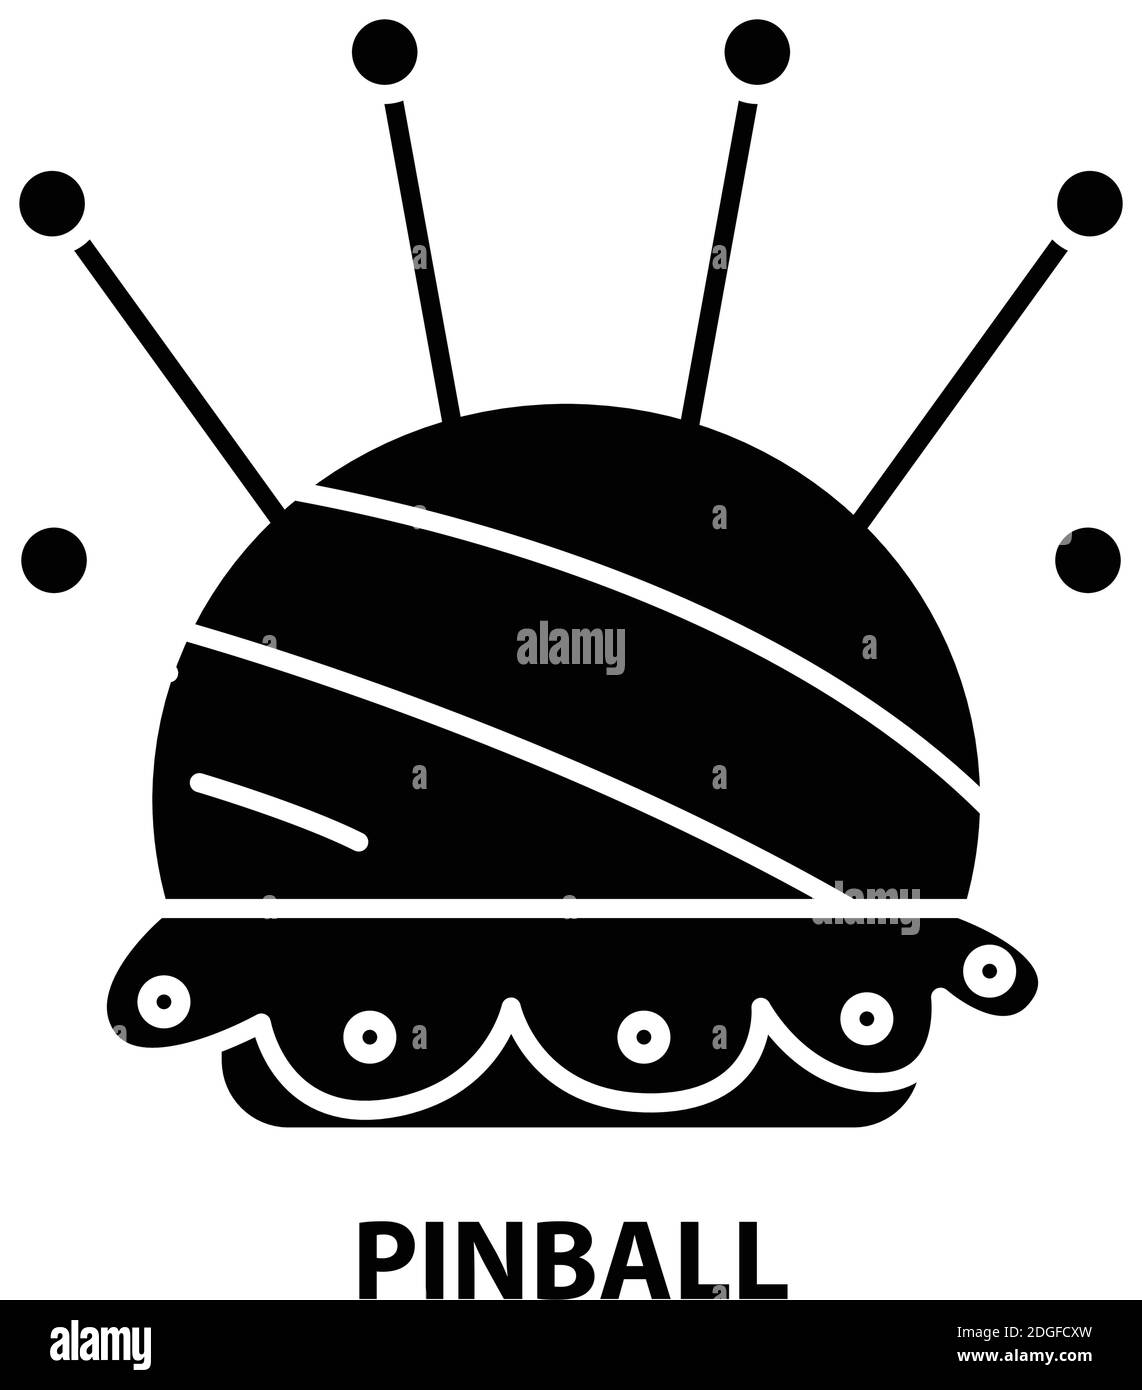 Pinball Máquina imagem realista imagem vetorial de macrovector© 285979600